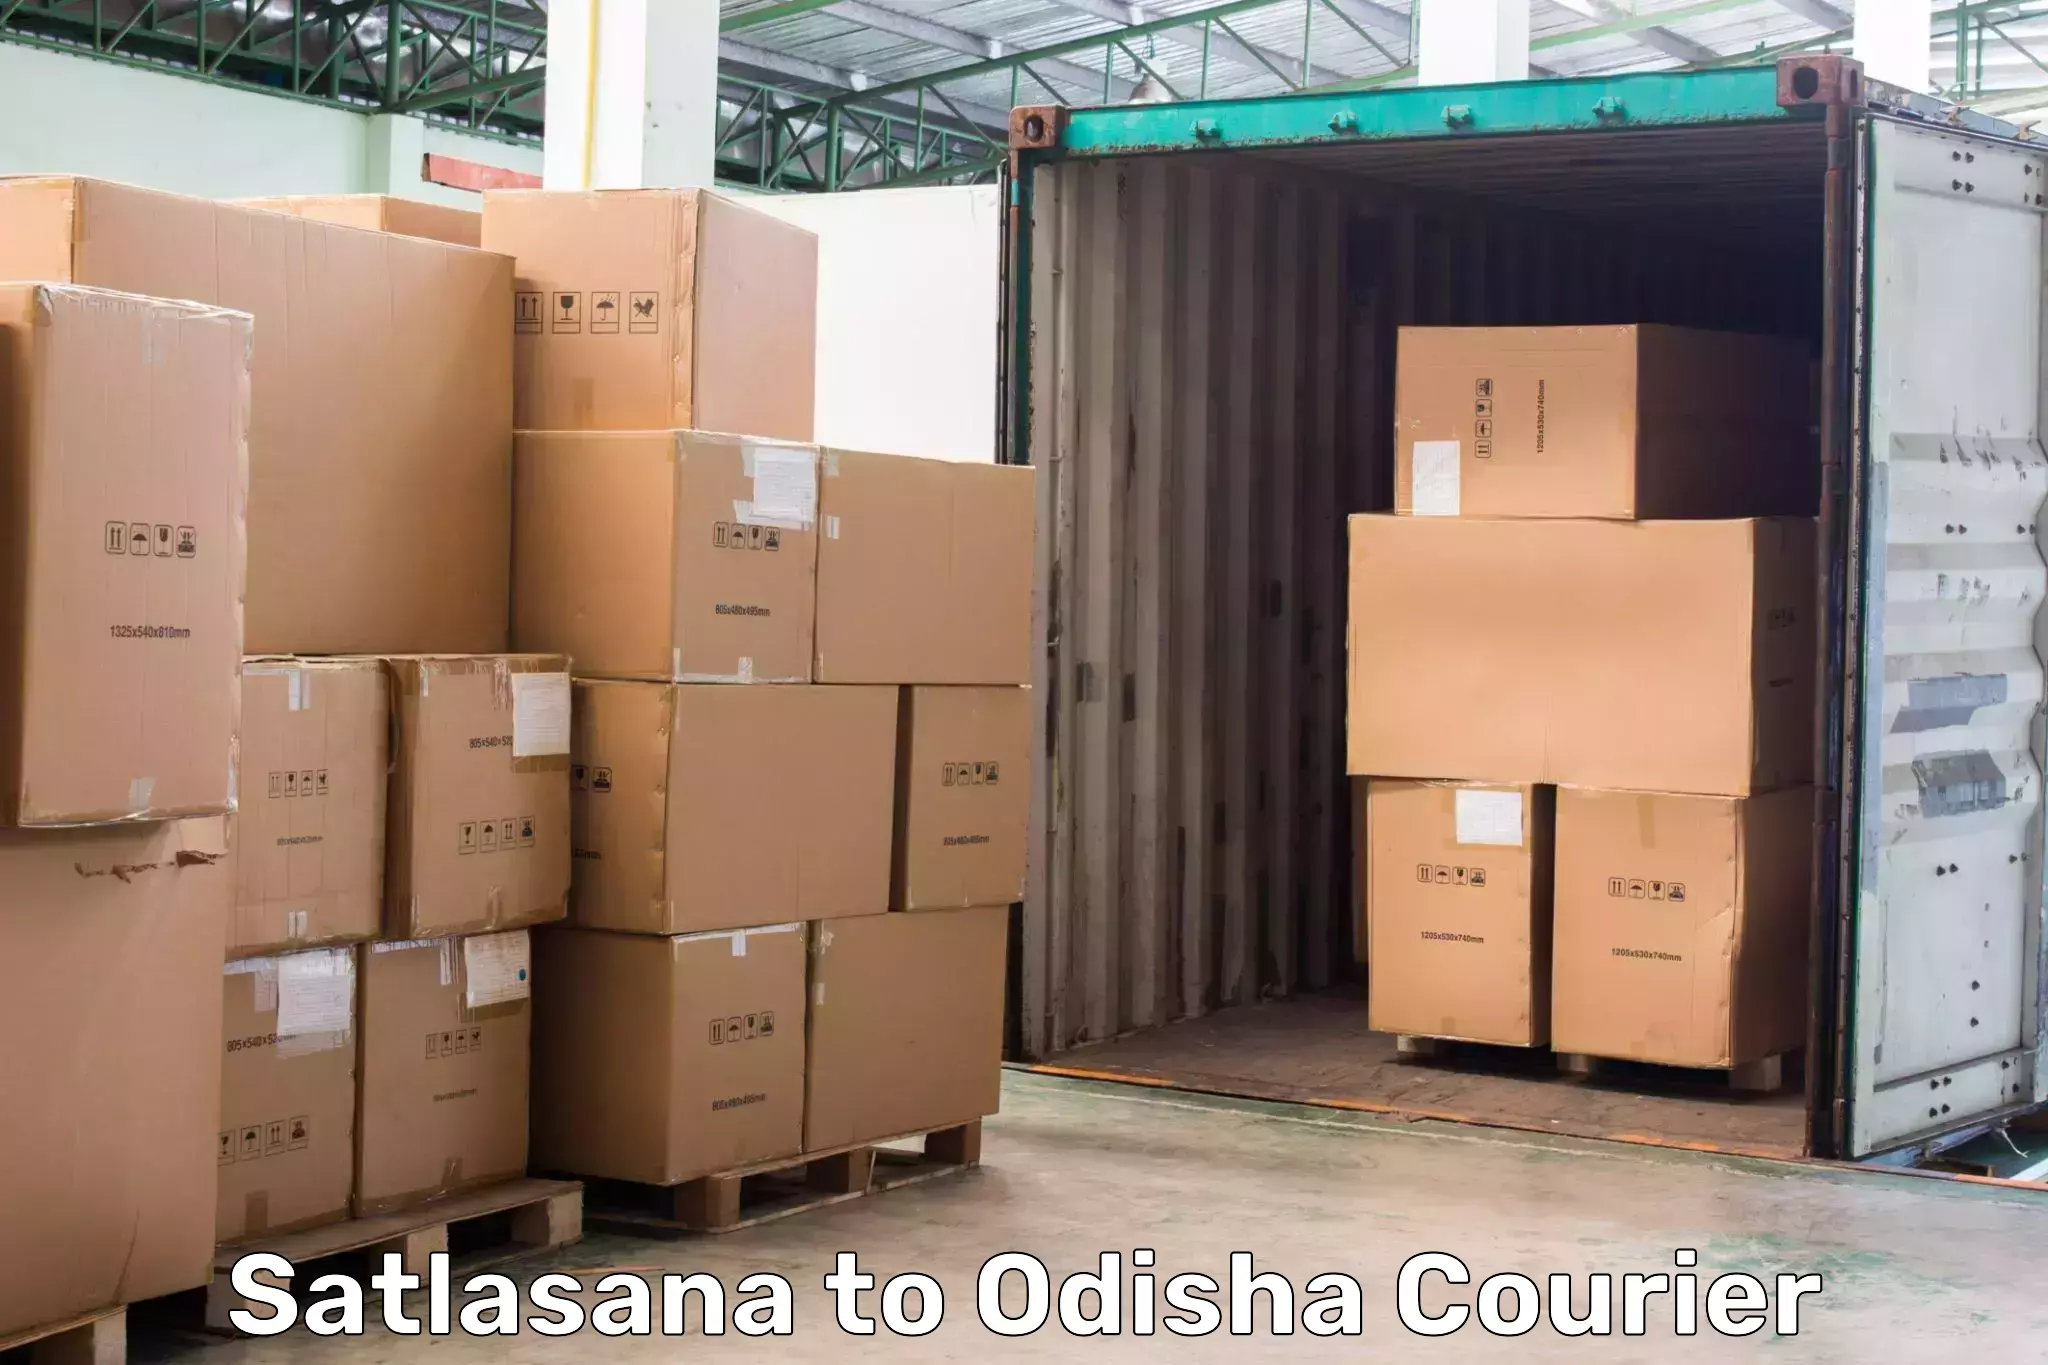 Next day courier Satlasana to Asika